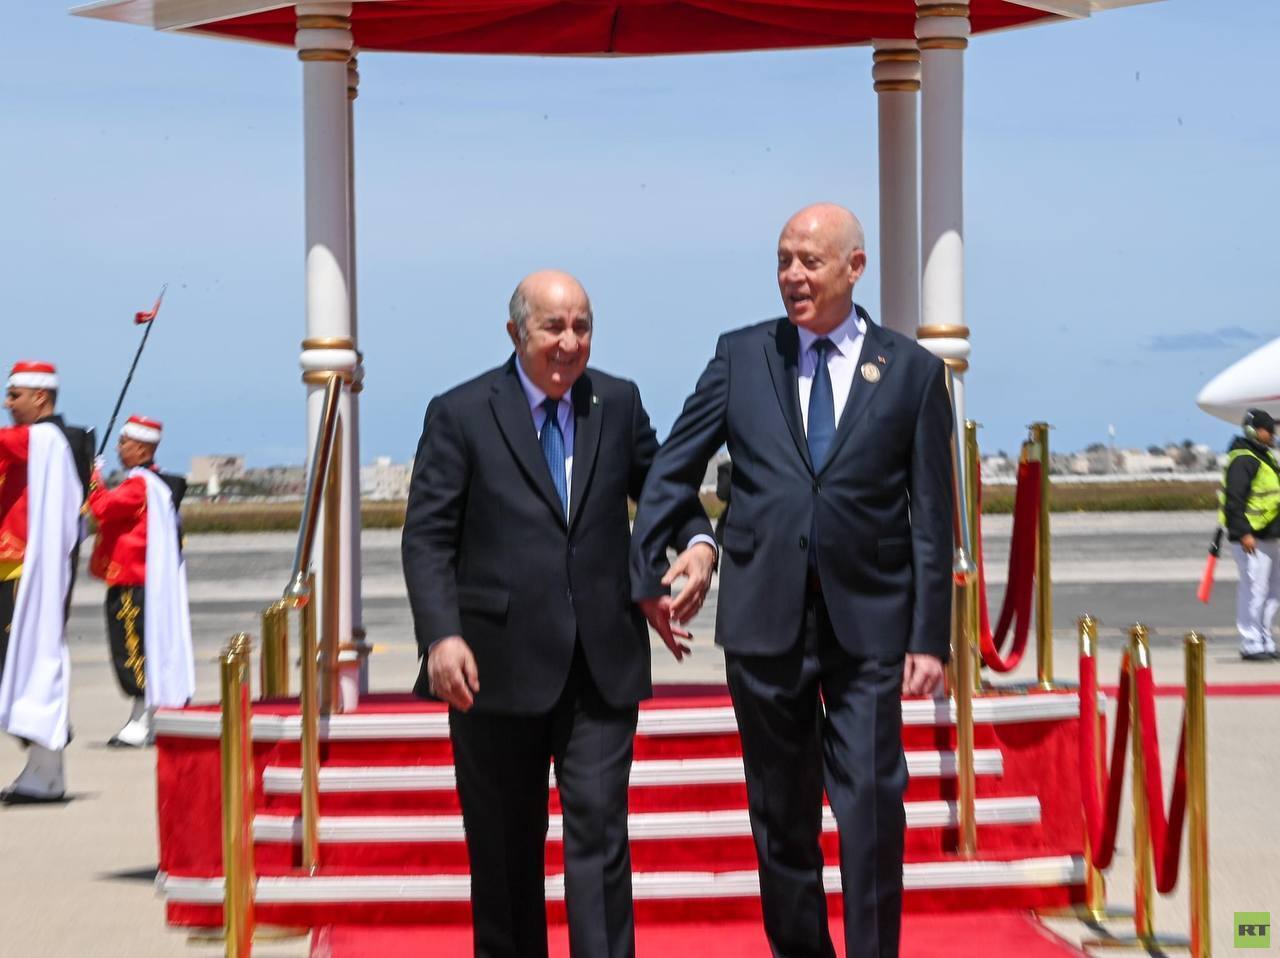 الرئيس الجزائري: تونس لن تسقط مهما تأثرت بالأحداث وهي دائما واقفة (فيديو)